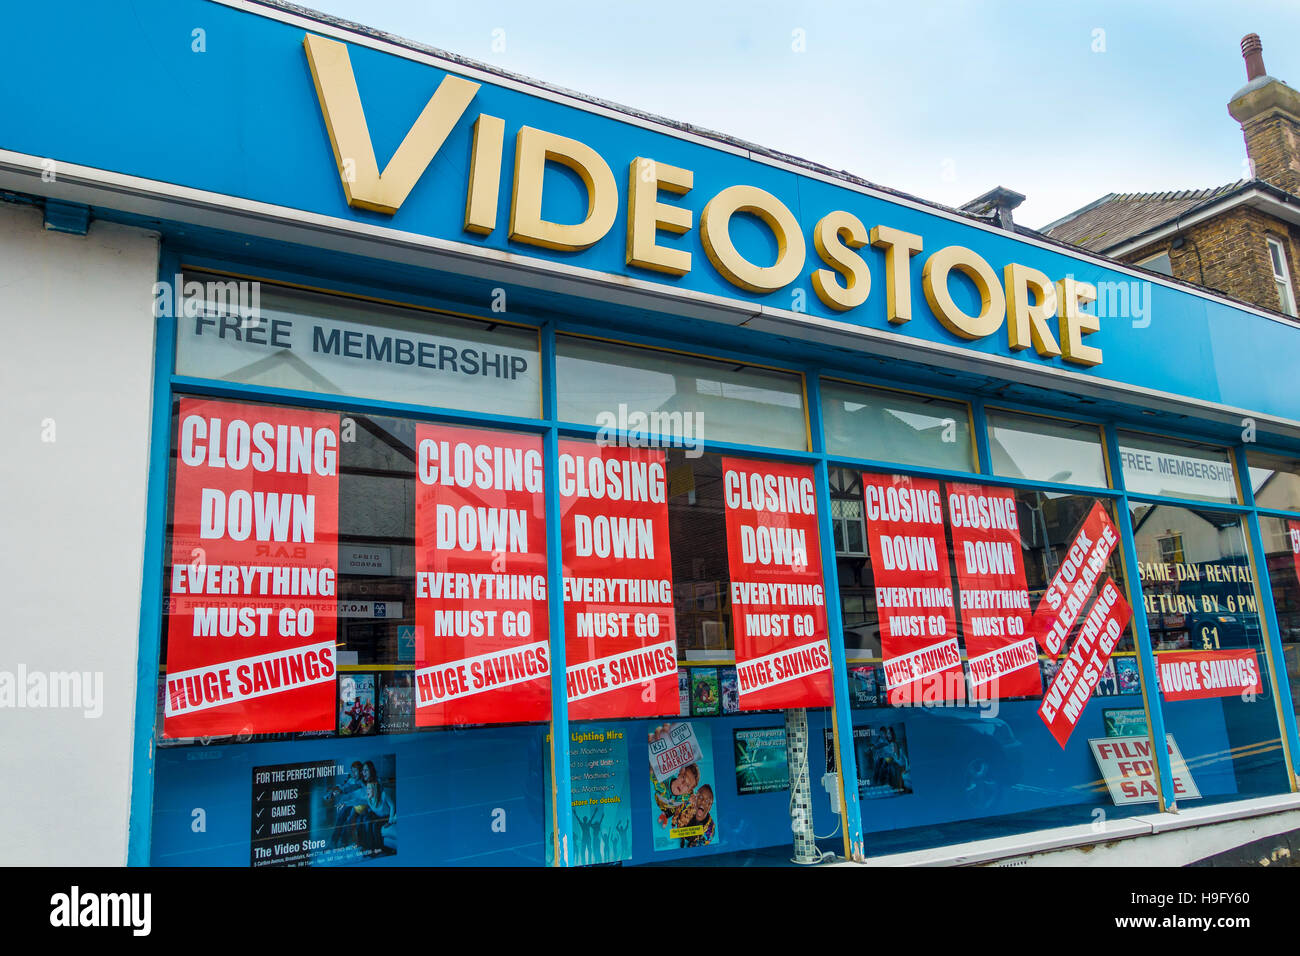 Vente de location de vidéos en magasin de vidéos fermeture Broadstairs Kent. Probablement le dernier magasin de location de vidéos au Royaume-Uni Banque D'Images